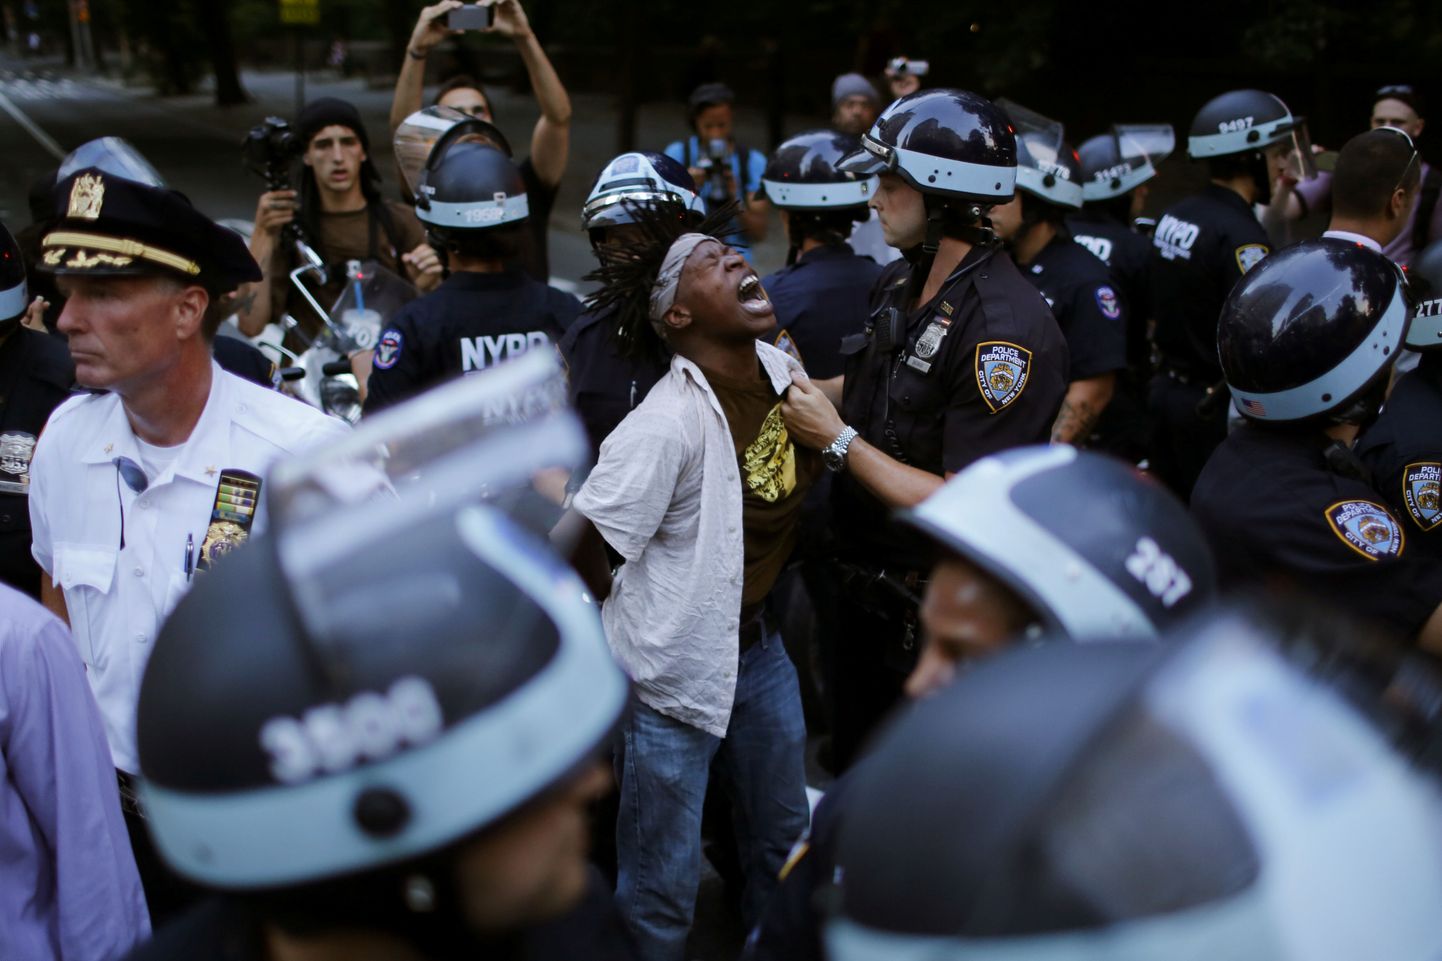 Tulistamine vallandas muu hulgas meeleavalduse Manhattanil, kus politsei pidi innukamaid protestijaid ohjeldama.